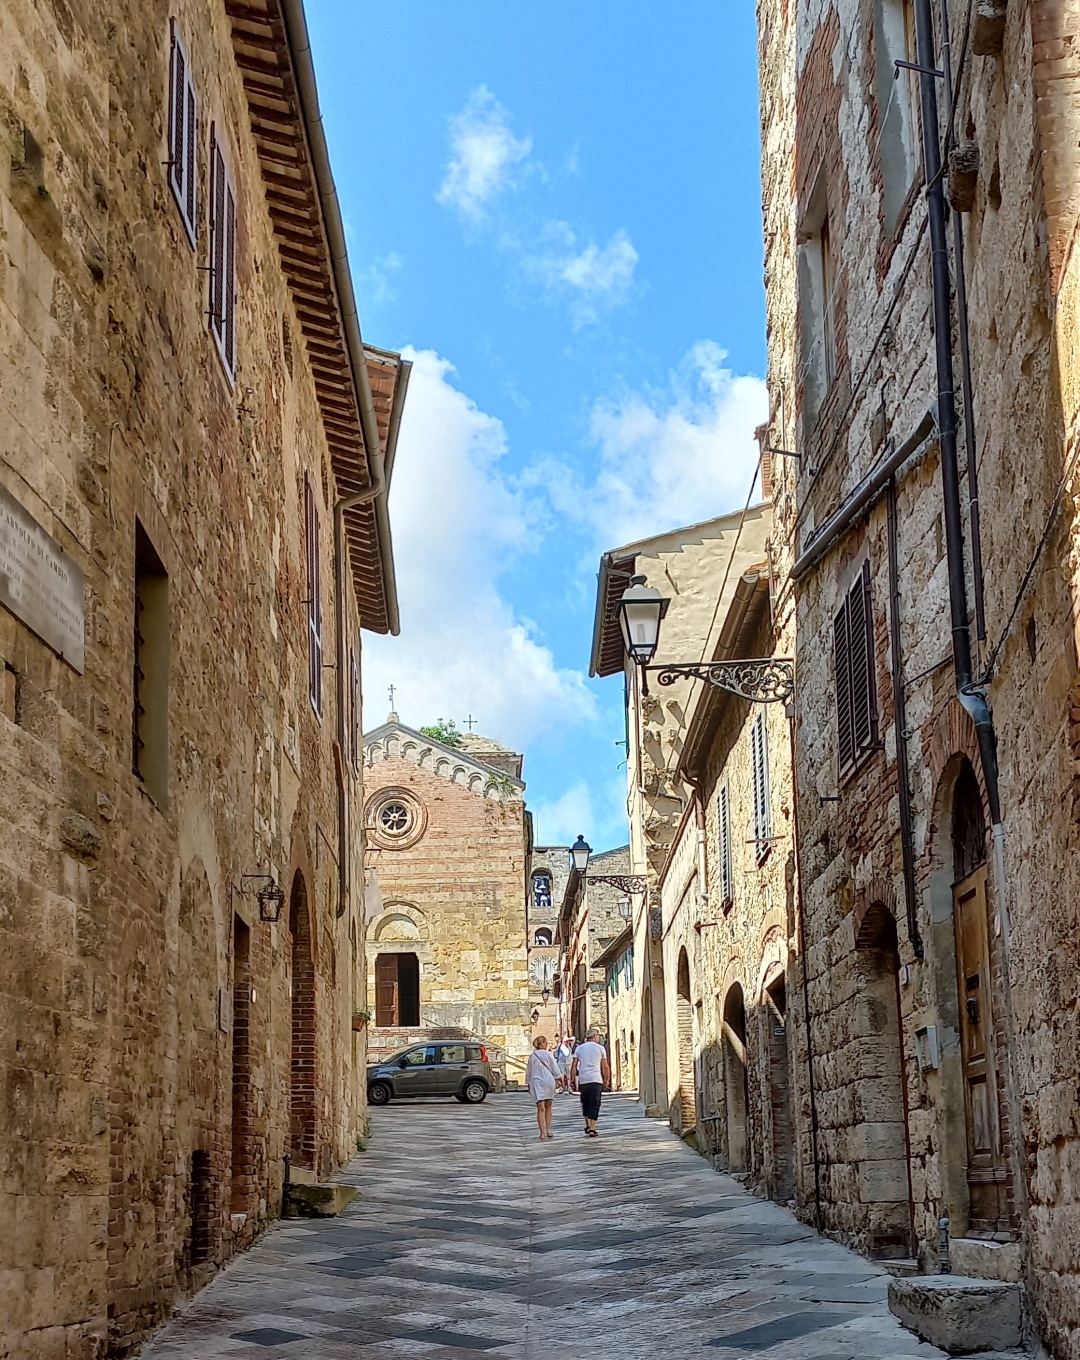 Een van de smalle straatjes in Siena met hoge gebouwen